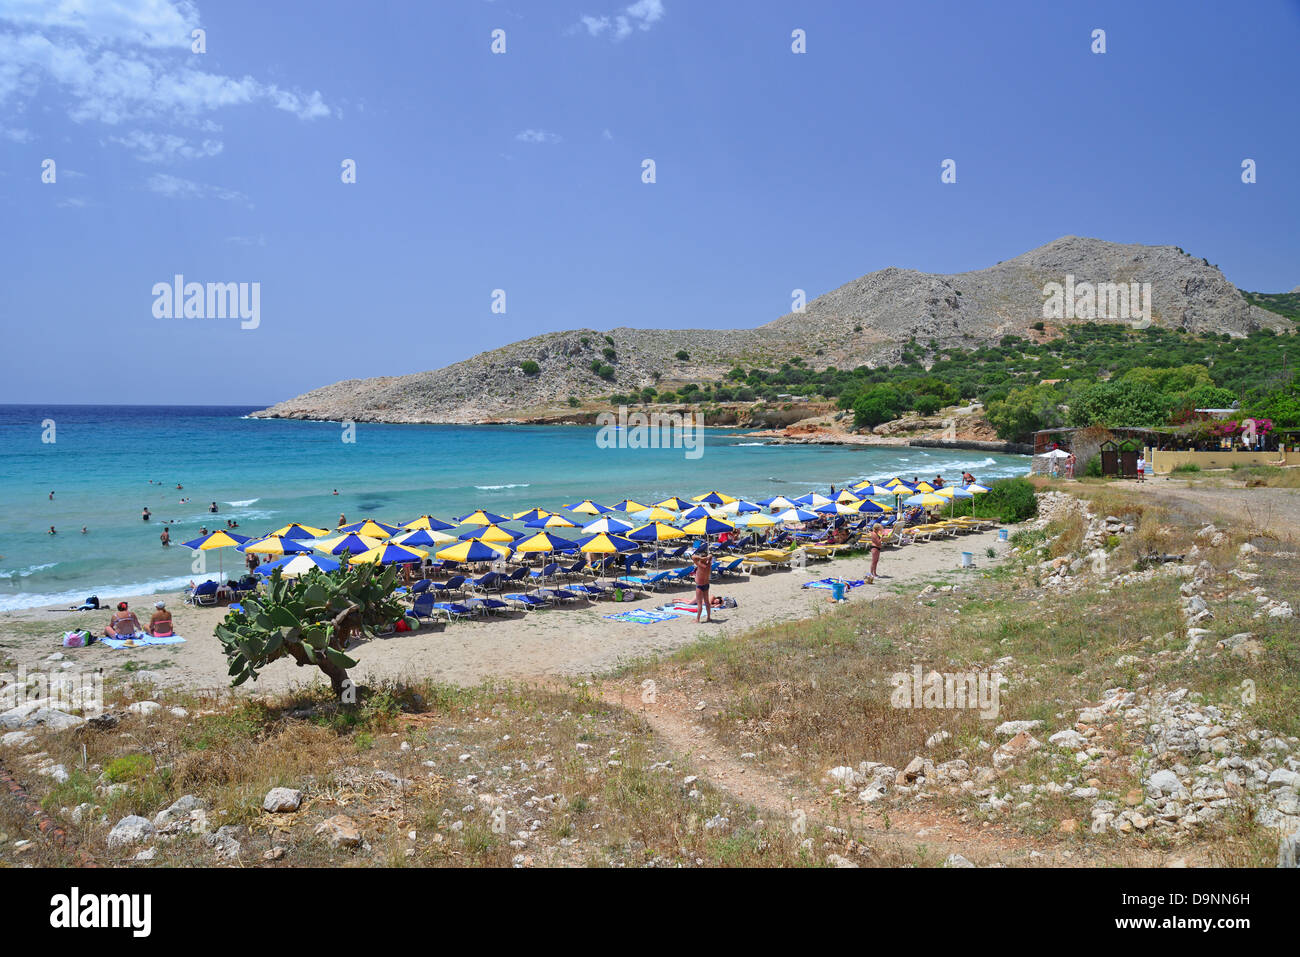 Plage de Pondamos, Halki (Chalki), Rhodes (Rodos) région, le Dodécanèse, Grèce, région sud de la Mer Egée Banque D'Images